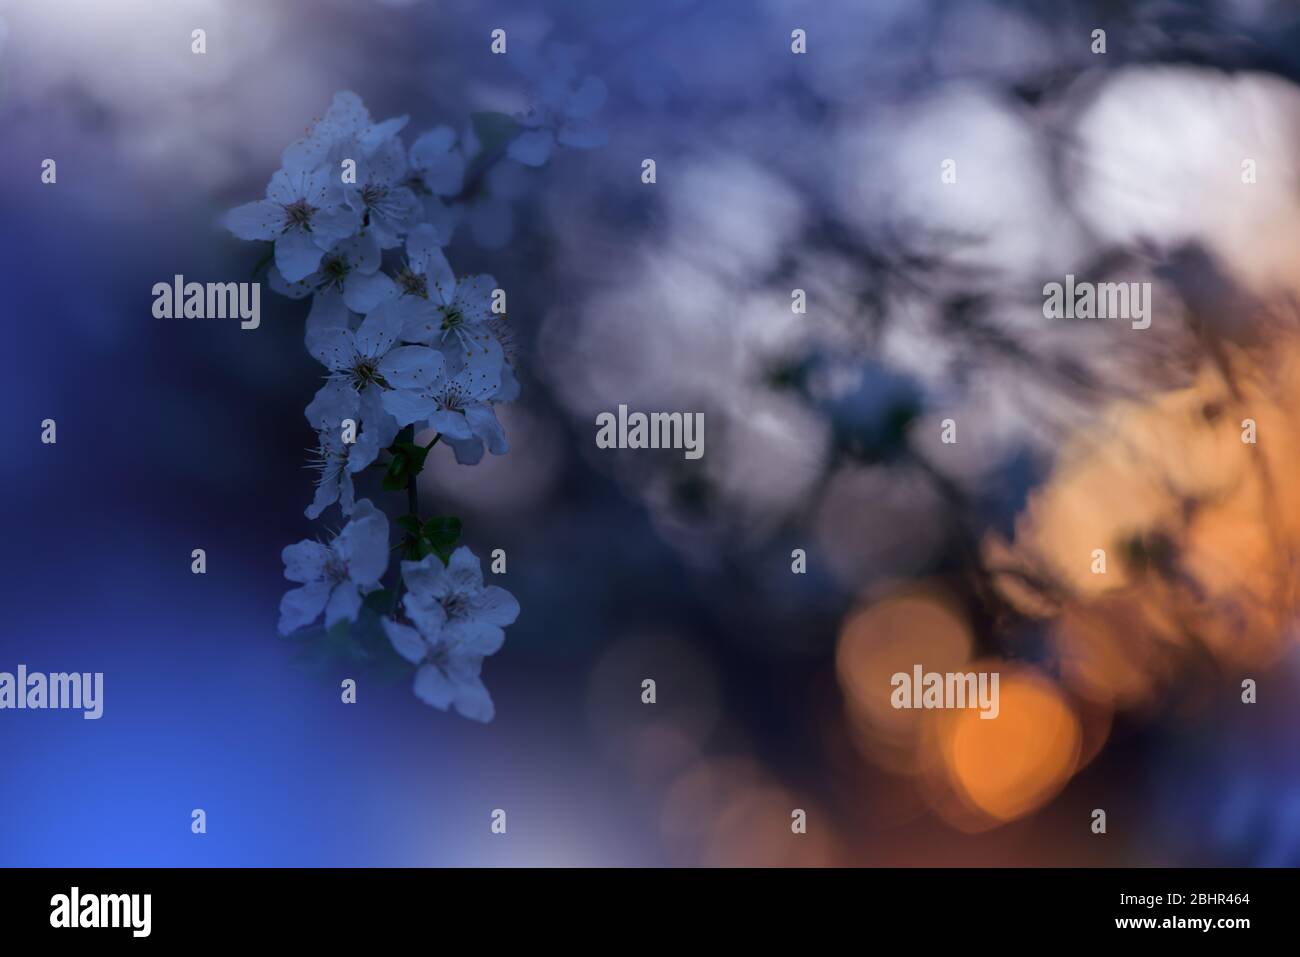 Schöne Natur Hintergrund.Floral Art Design.Abstrakte Makro-Fotografie.Bunte Blume.Blühende Frühlingsblumen.Kreative Künstlerische Wallpaper.Blue Sky. Stockfoto